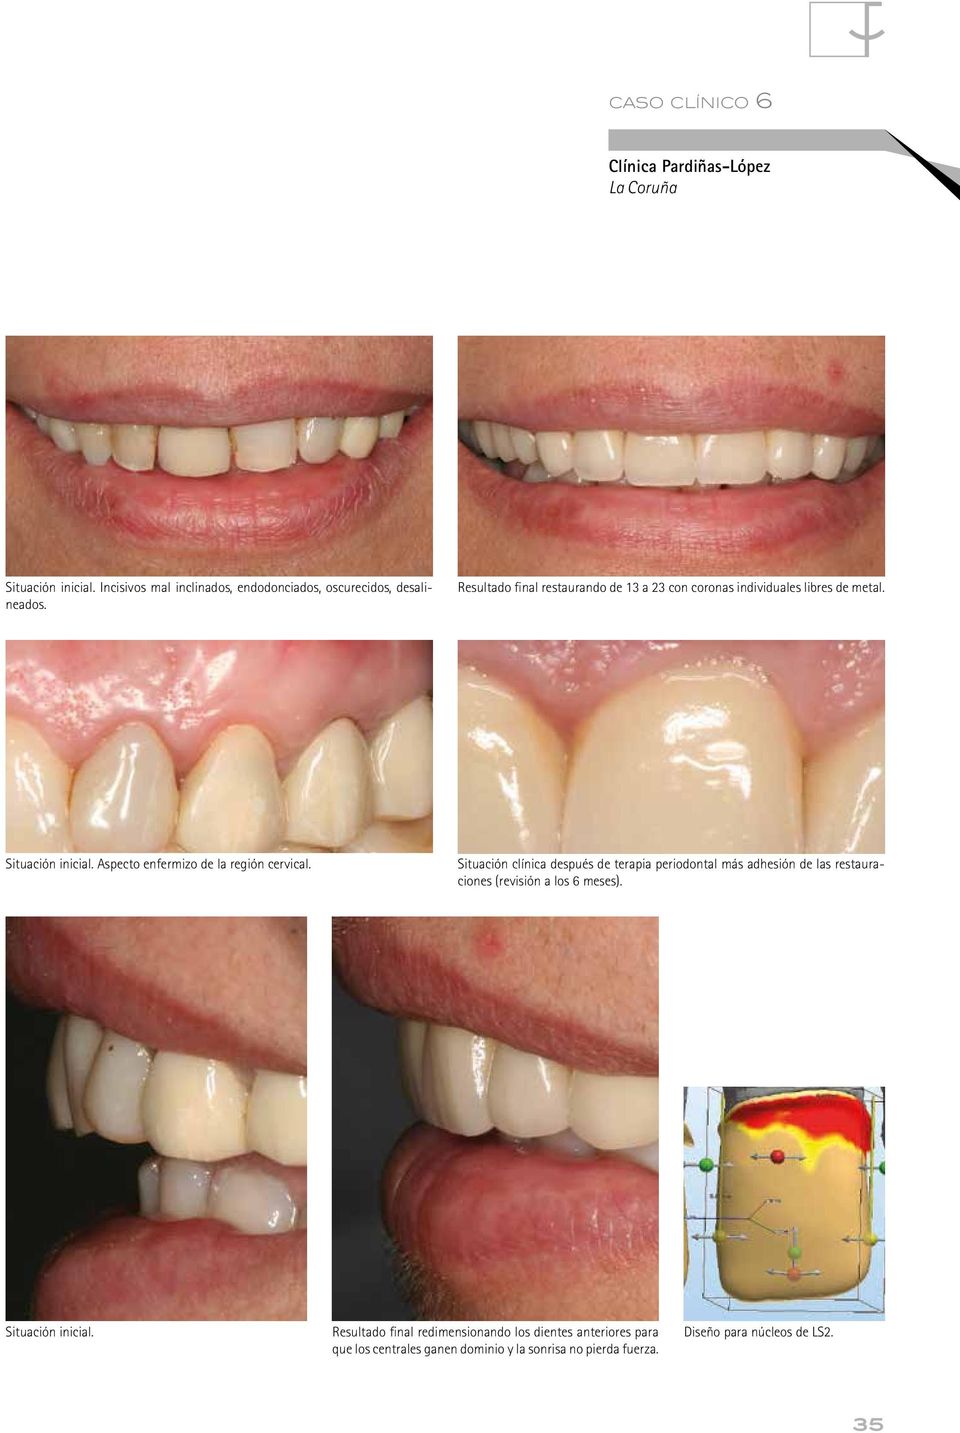 Situación clínica después de terapia periodontal más adhesión de las restauraciones (revisión a los 6 meses). Situación inicial.